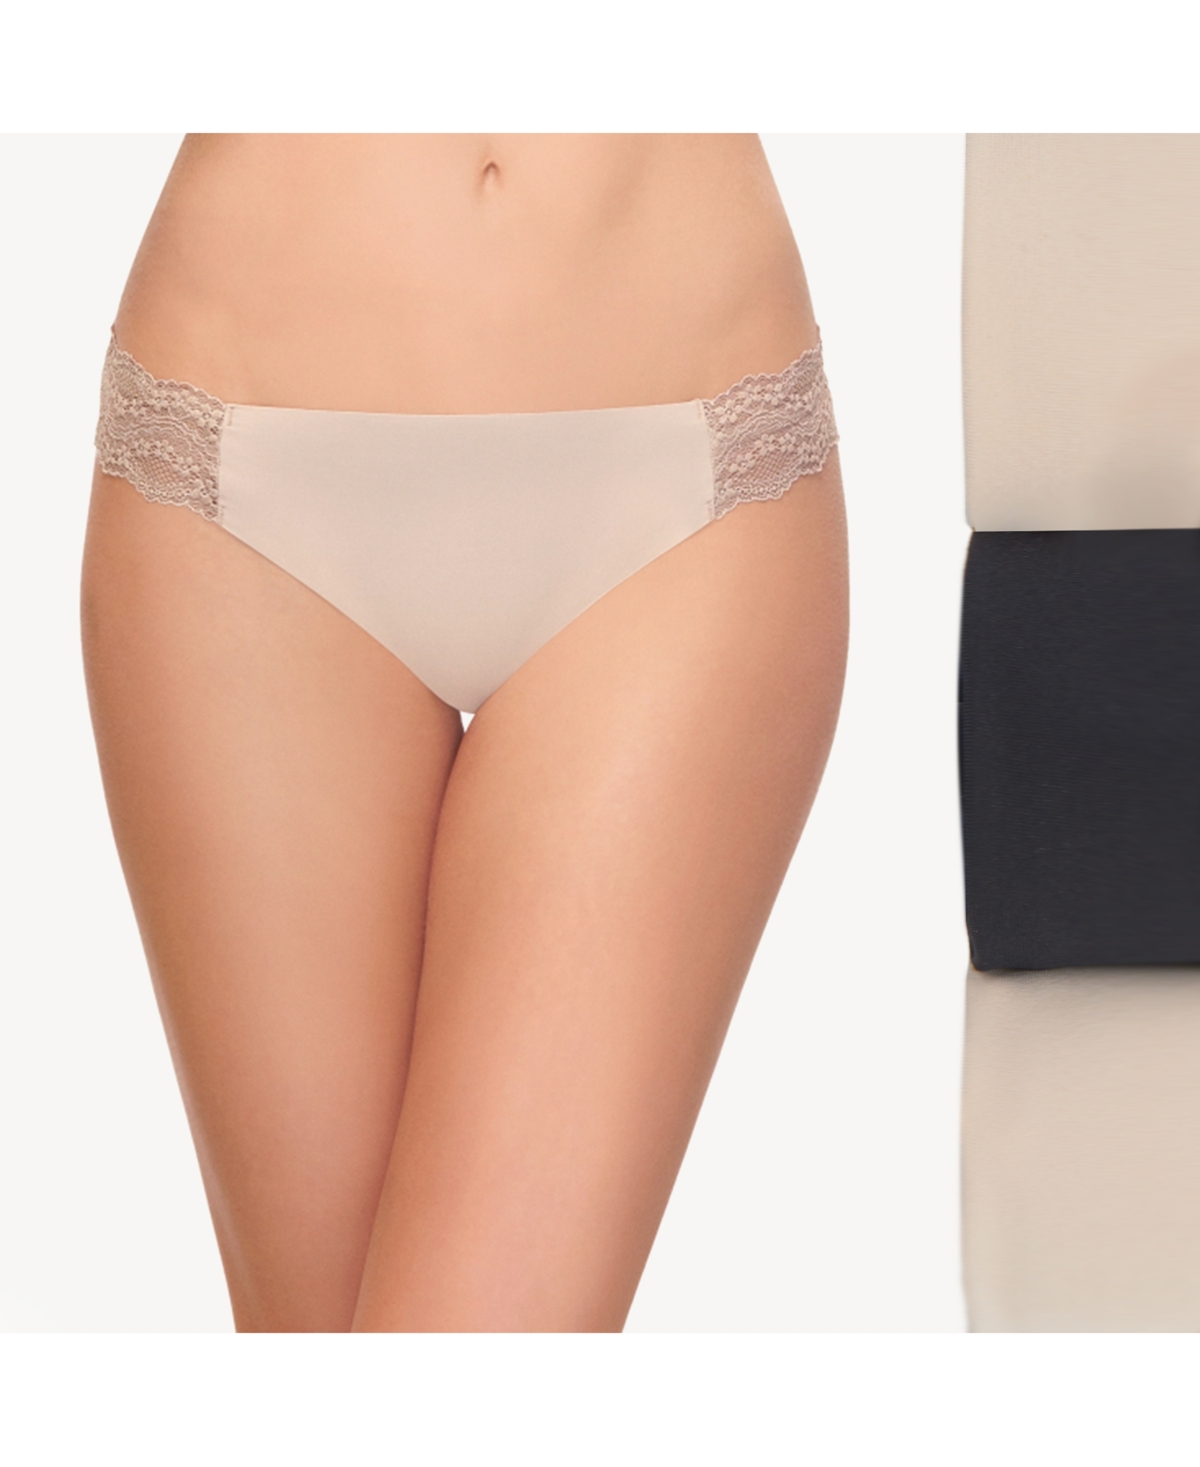 Women's B.Bare 3 Pack Thong Underwear 970367 - Night, Antler, Rose Smoke